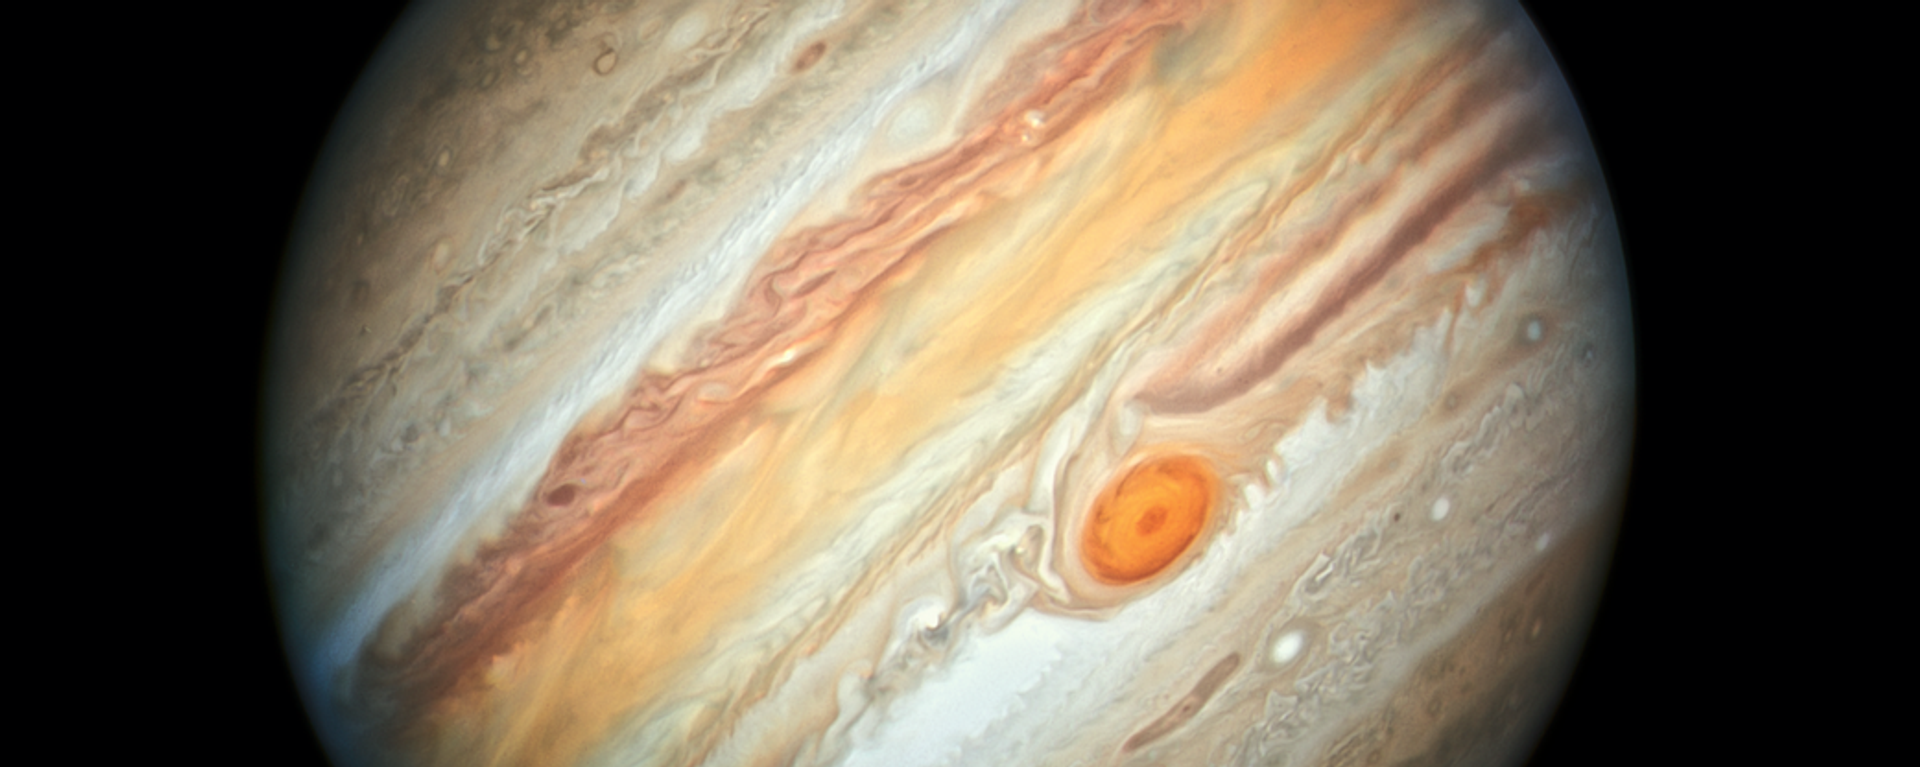 La mancha roja en Júpiter - Sputnik Mundo, 1920, 16.09.2021